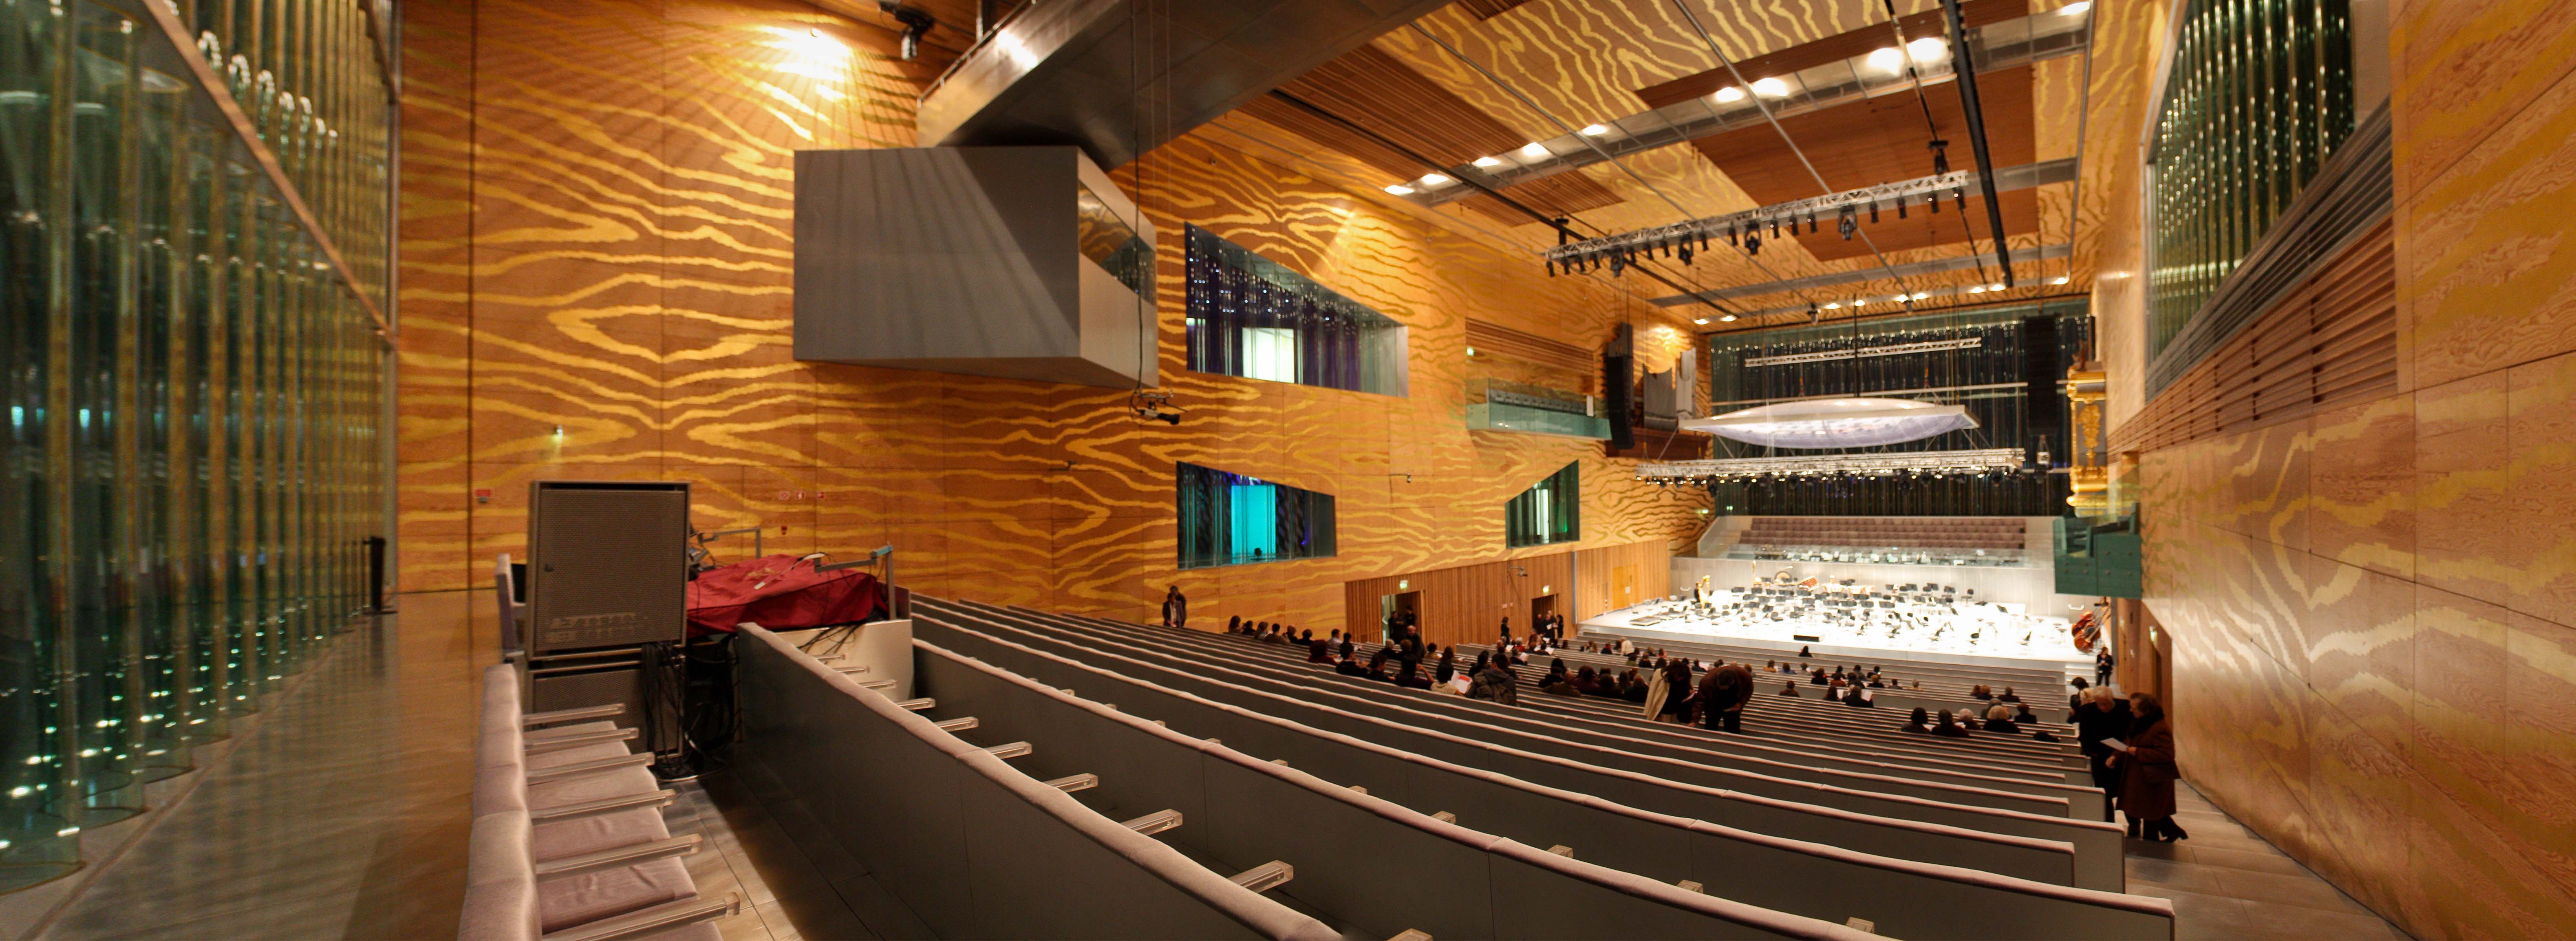 Casa musica. Современный концертный зал. Концертный зал дом музыки в порту Португалия. Дом музыки (порту). Исландия концертный зал Харпа внутри.